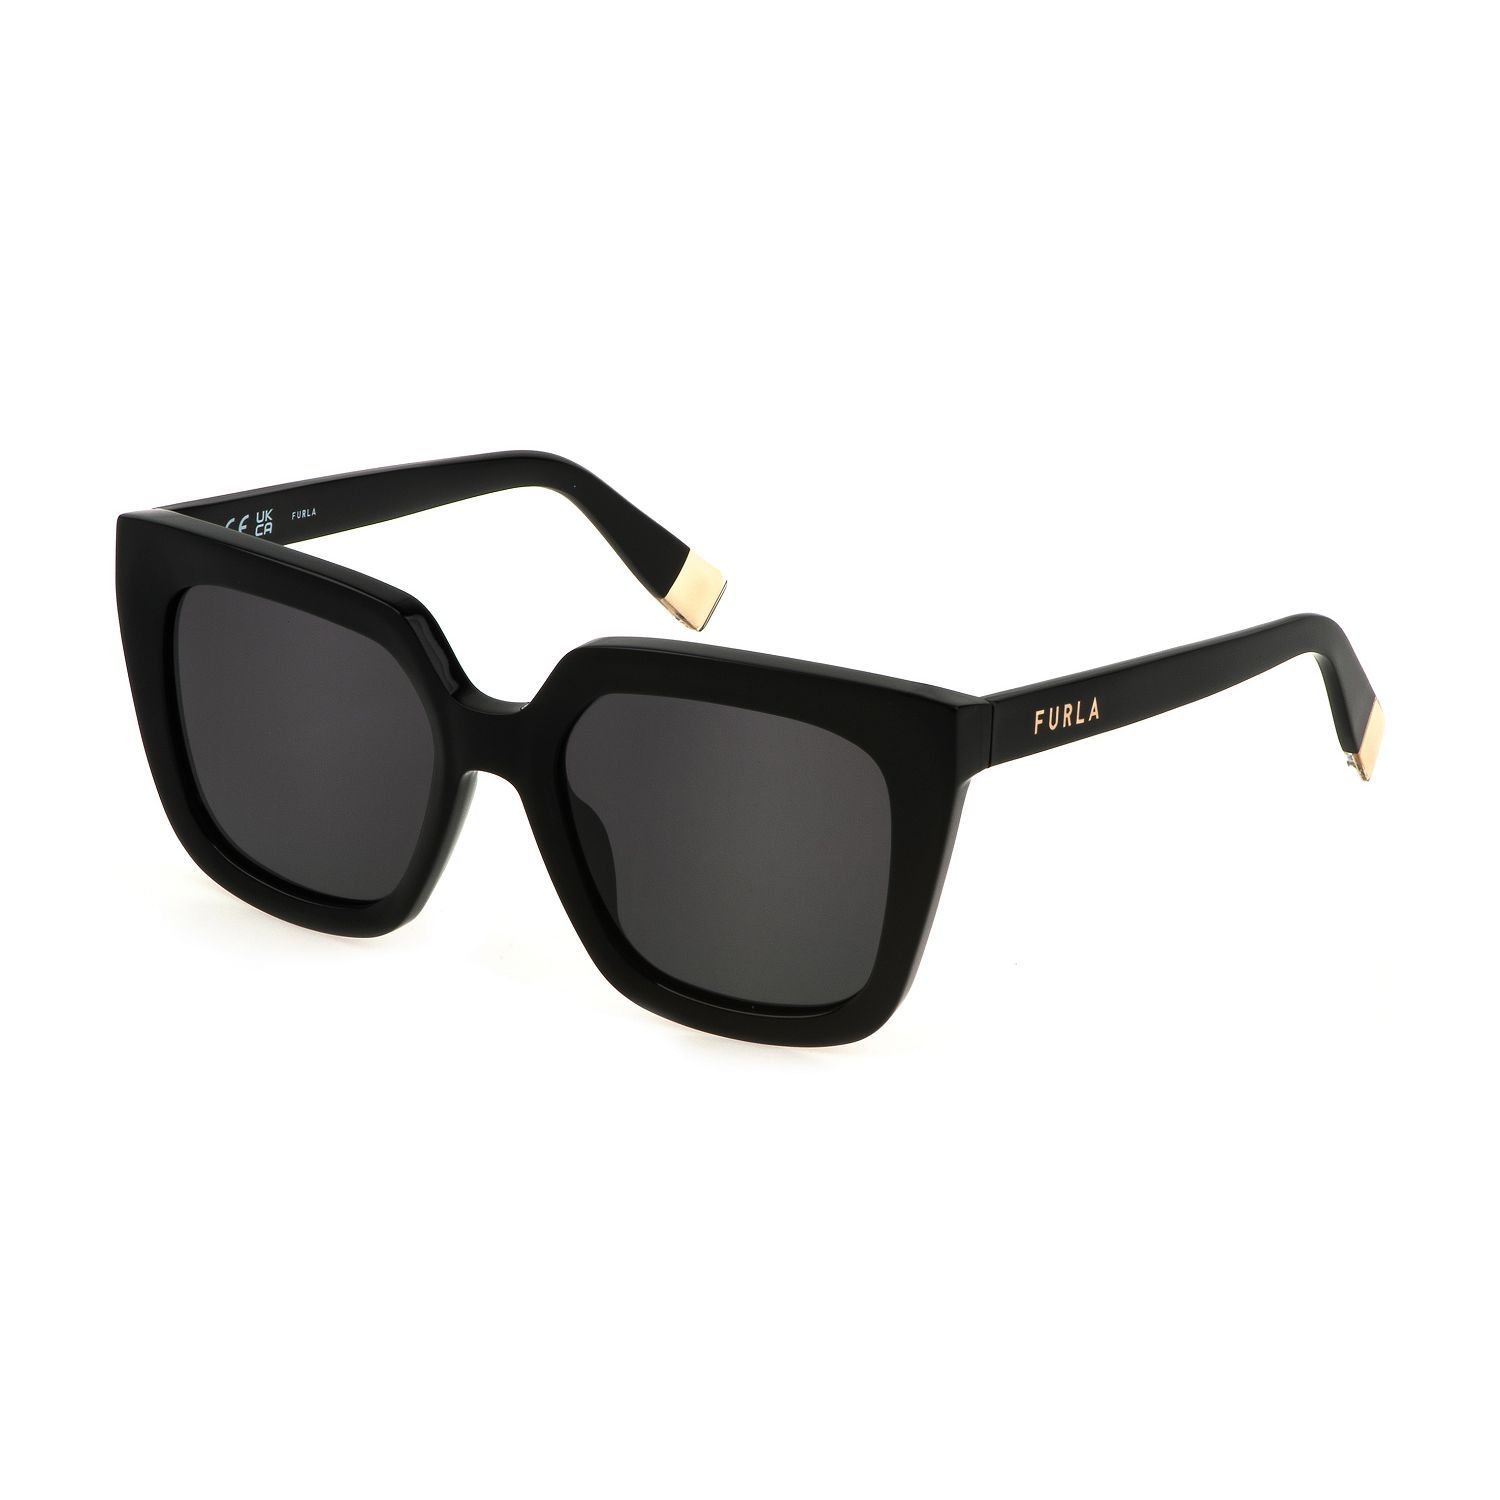 SFU776 Square Sunglasses 0700 - size 53